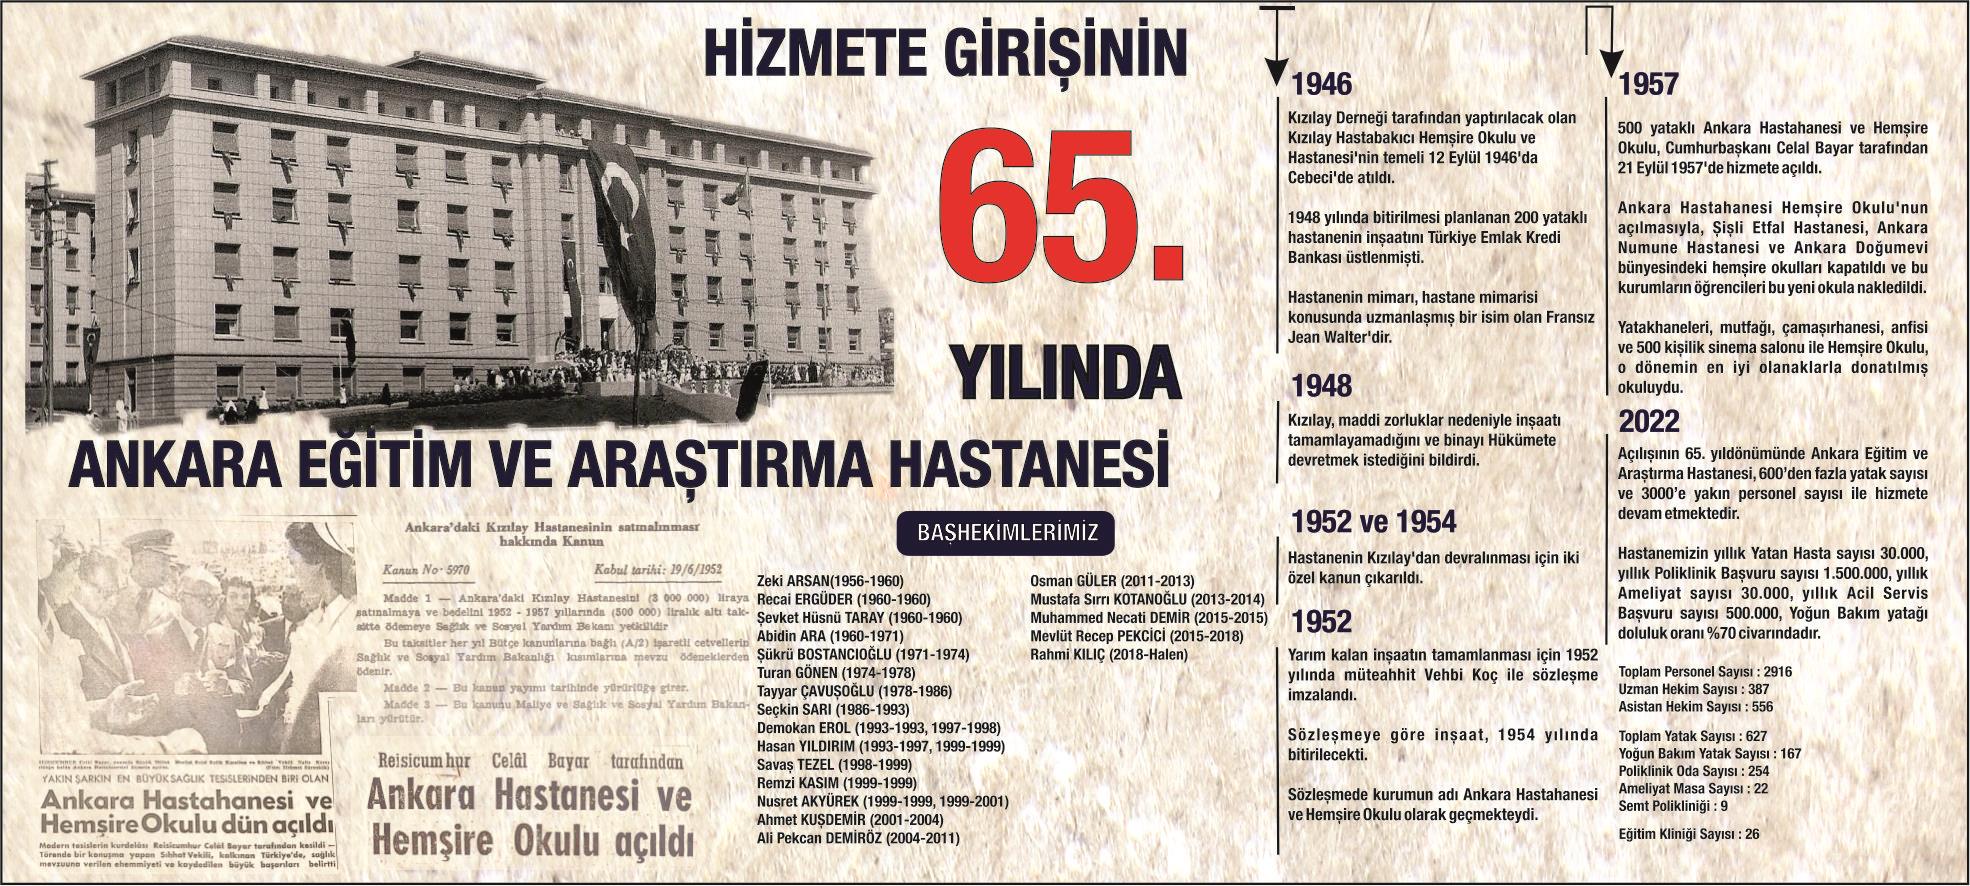 Ankara Eğitim ve Araştırma Hastanesi Hizmete Girişinin 65. Yılı Kutlu Olsun.